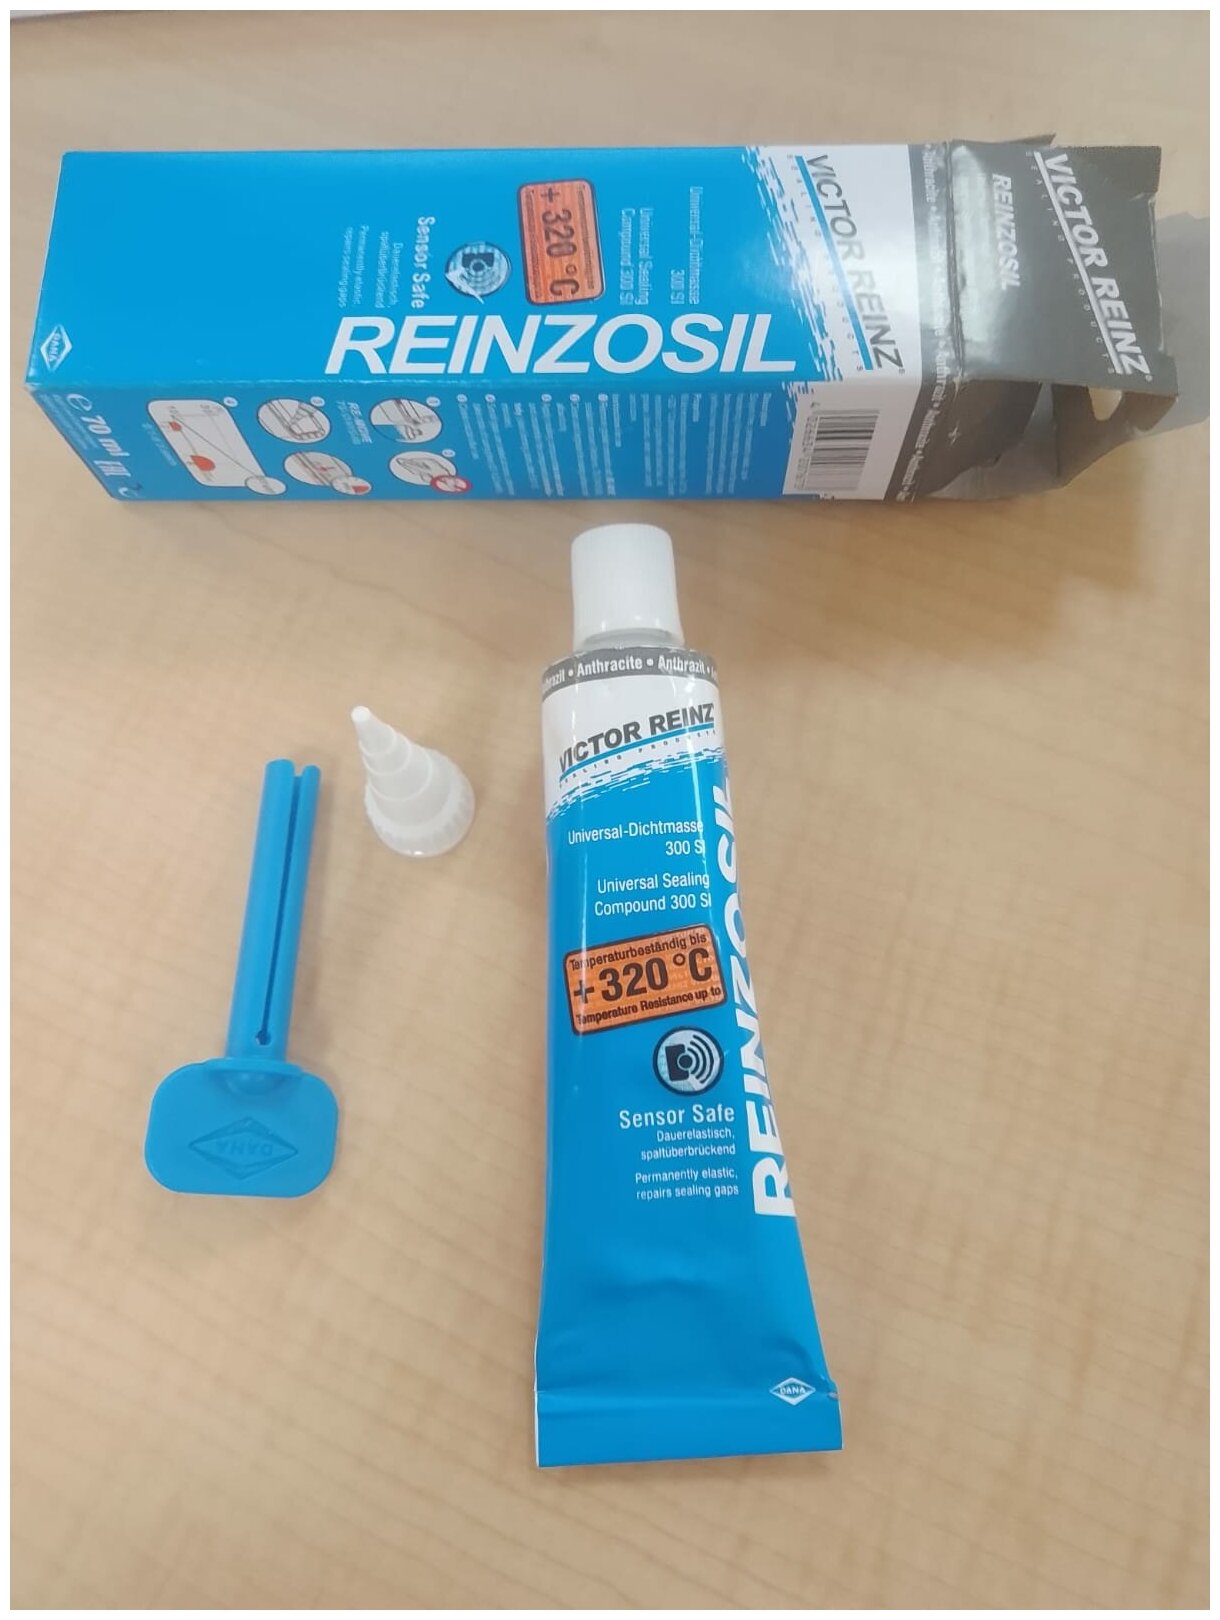 Универсальный силиконовый клей для ремонта автомобиля VICTOR REINZ Reinzosil 70-31414-10 70 мл